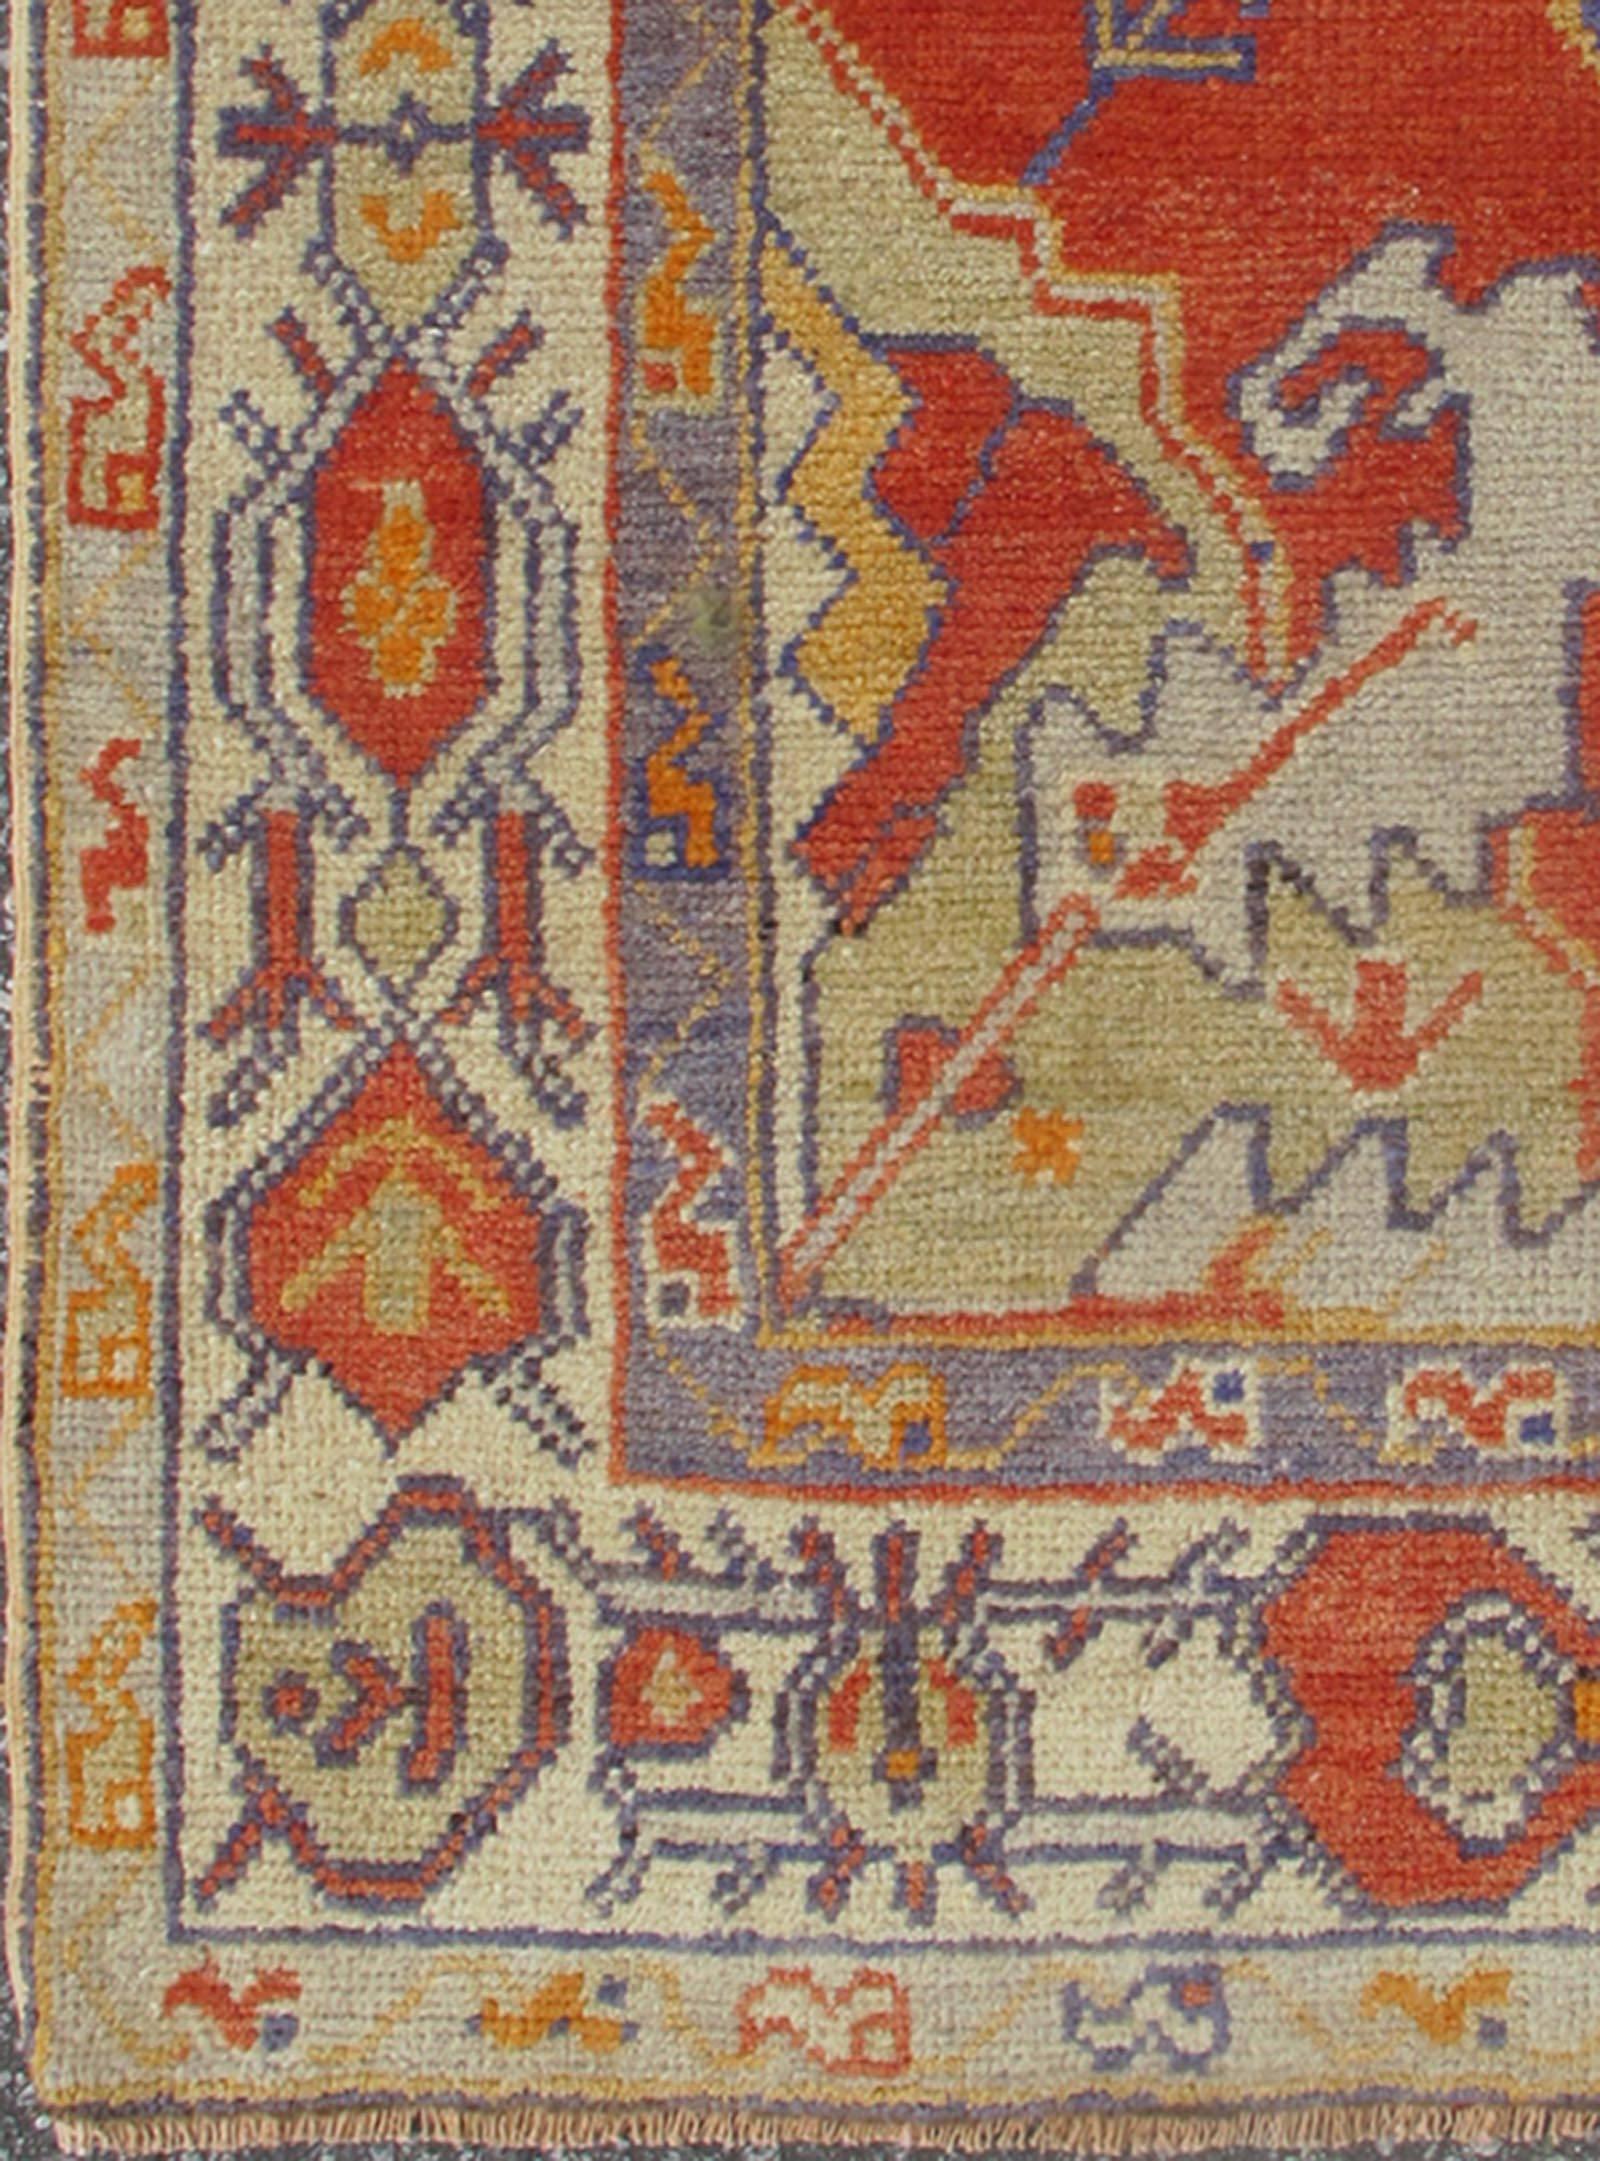  Türkischer Oushak-Teppich mit stilisiertem geometrischem Muster
rug/tu-ugu-136100   herkunft/Türkei

Dieser alte Oushak-Teppich zeichnet sich durch ein wunderschönes, kompliziertes Muster aus. Das zentrale Medaillon wird durch eine symmetrische